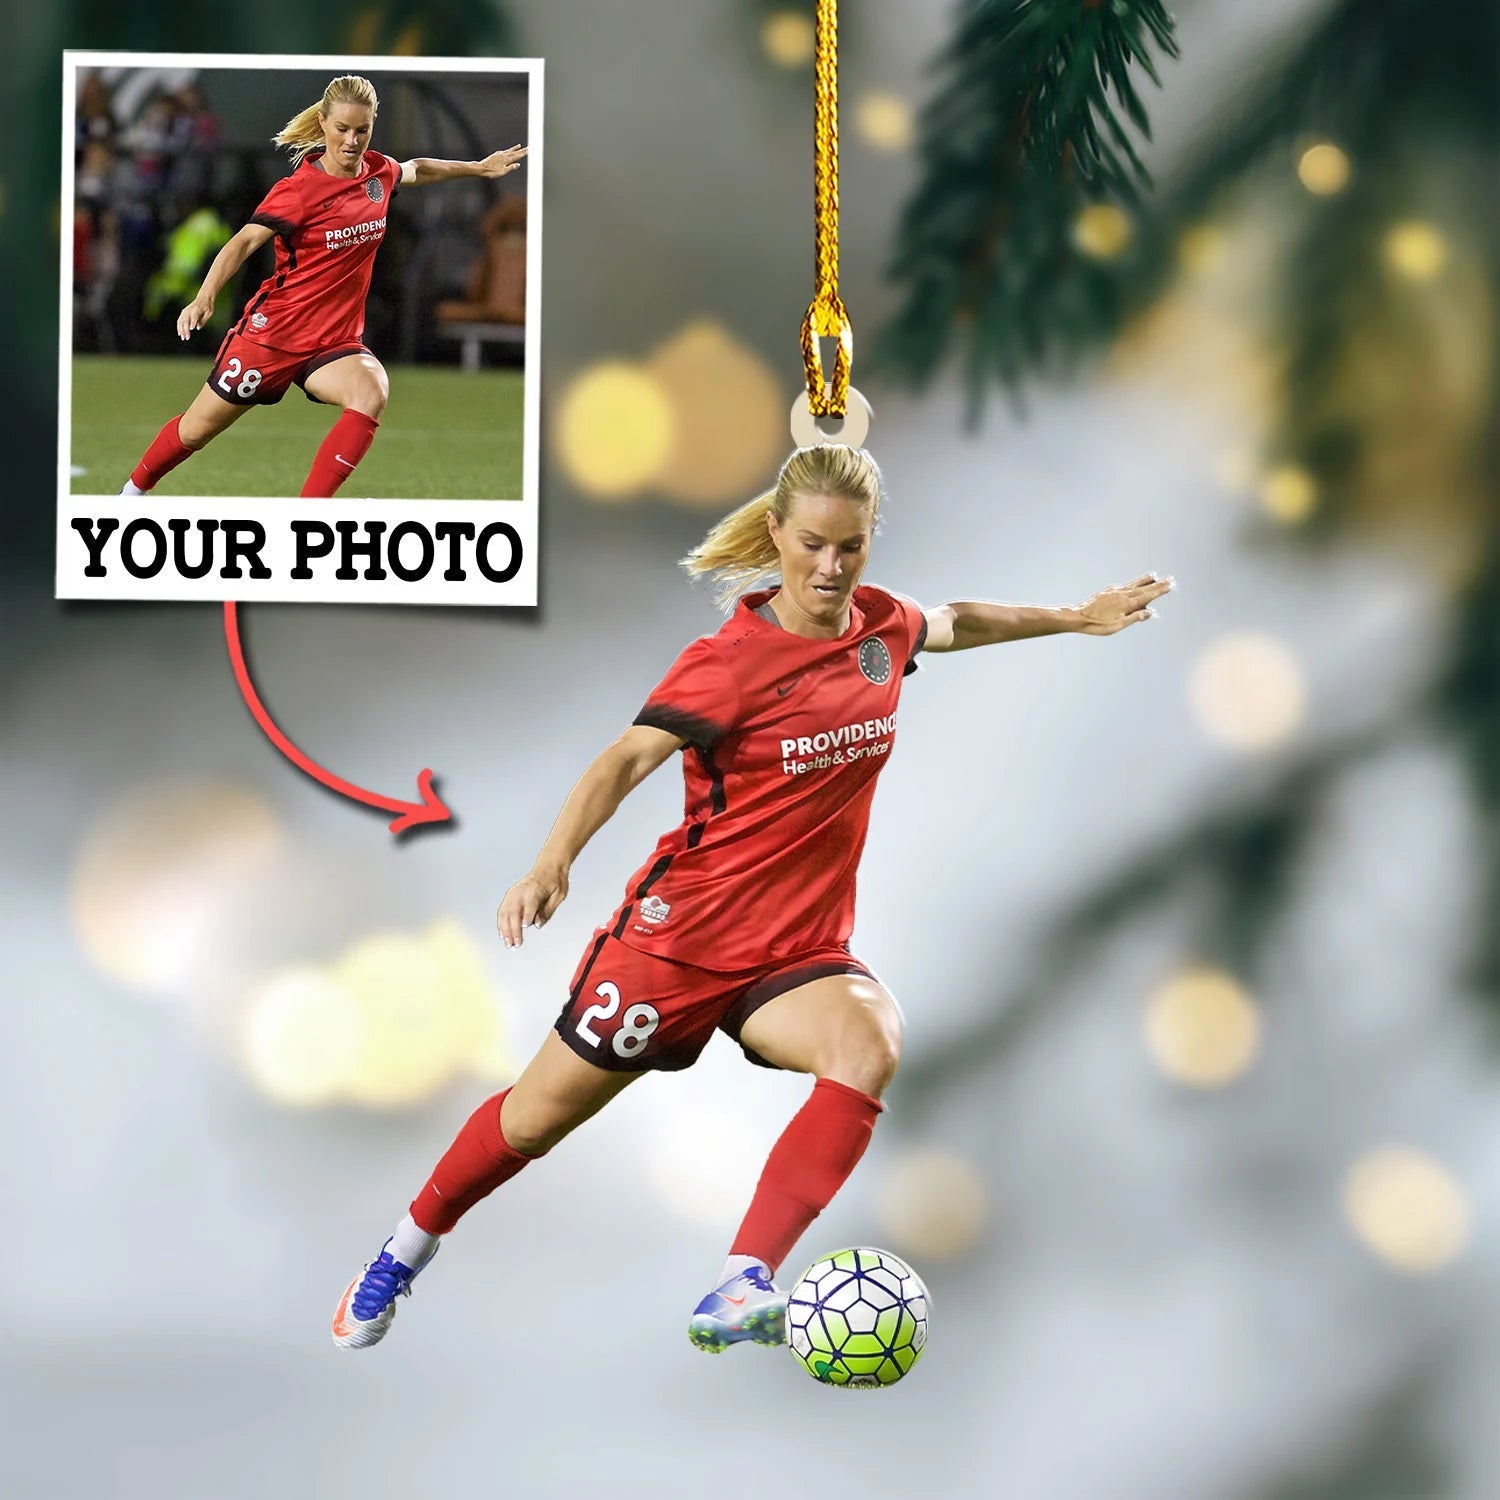 Custom Photo Ornament Gift For Soccer Player - Personalized Upload Photo Soccer Team Ornament Gift For Soccer Lovers